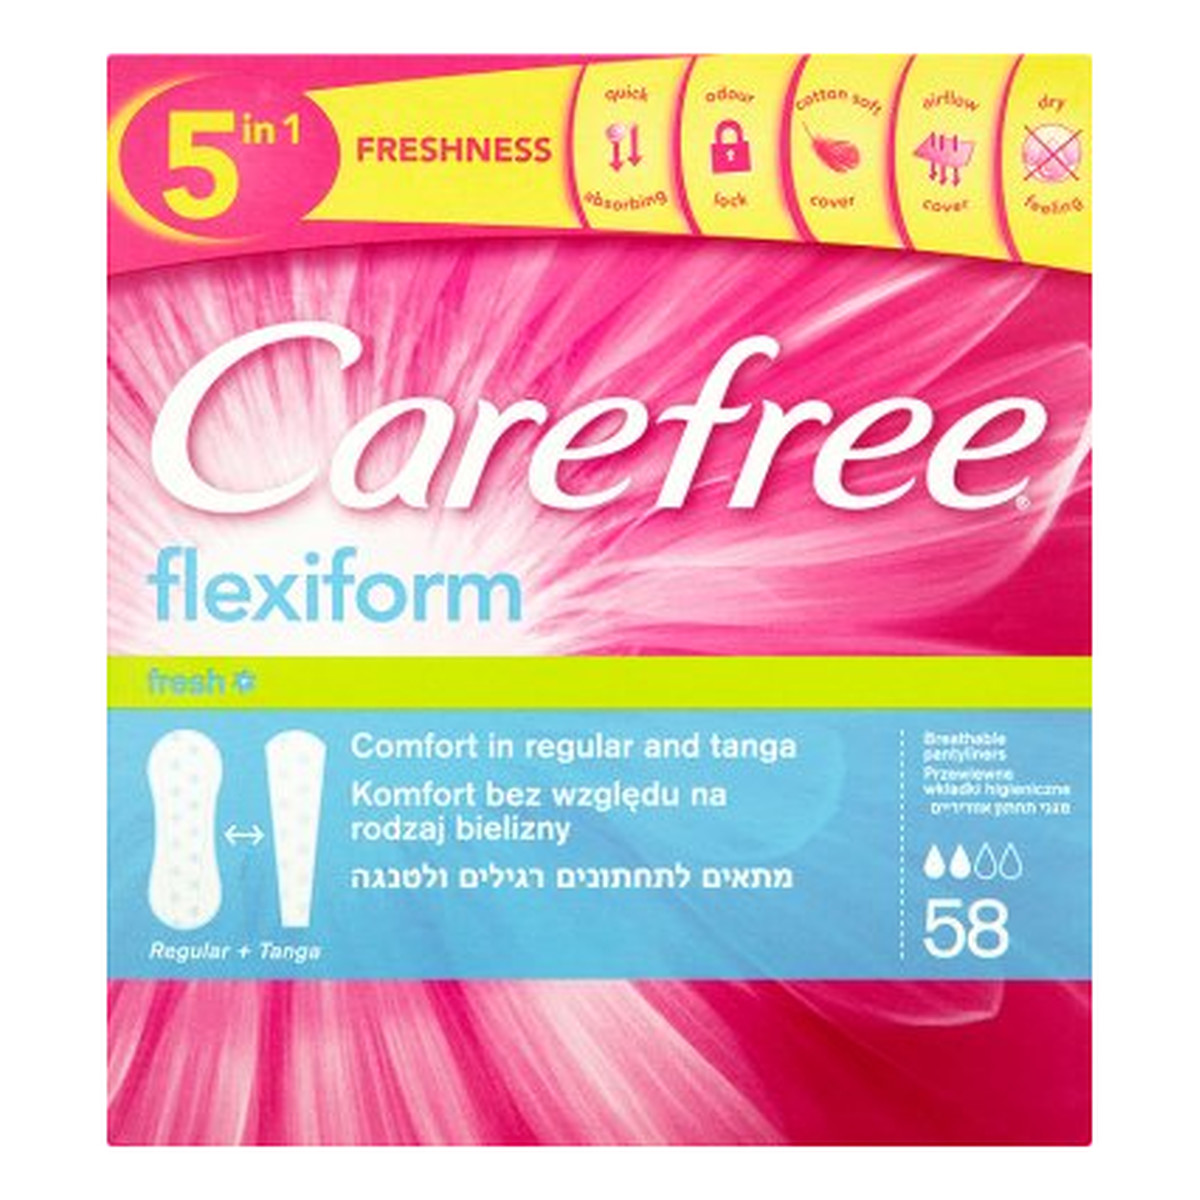 Carefree Flexiform Fresh Wkładki Higieniczne 58szt.